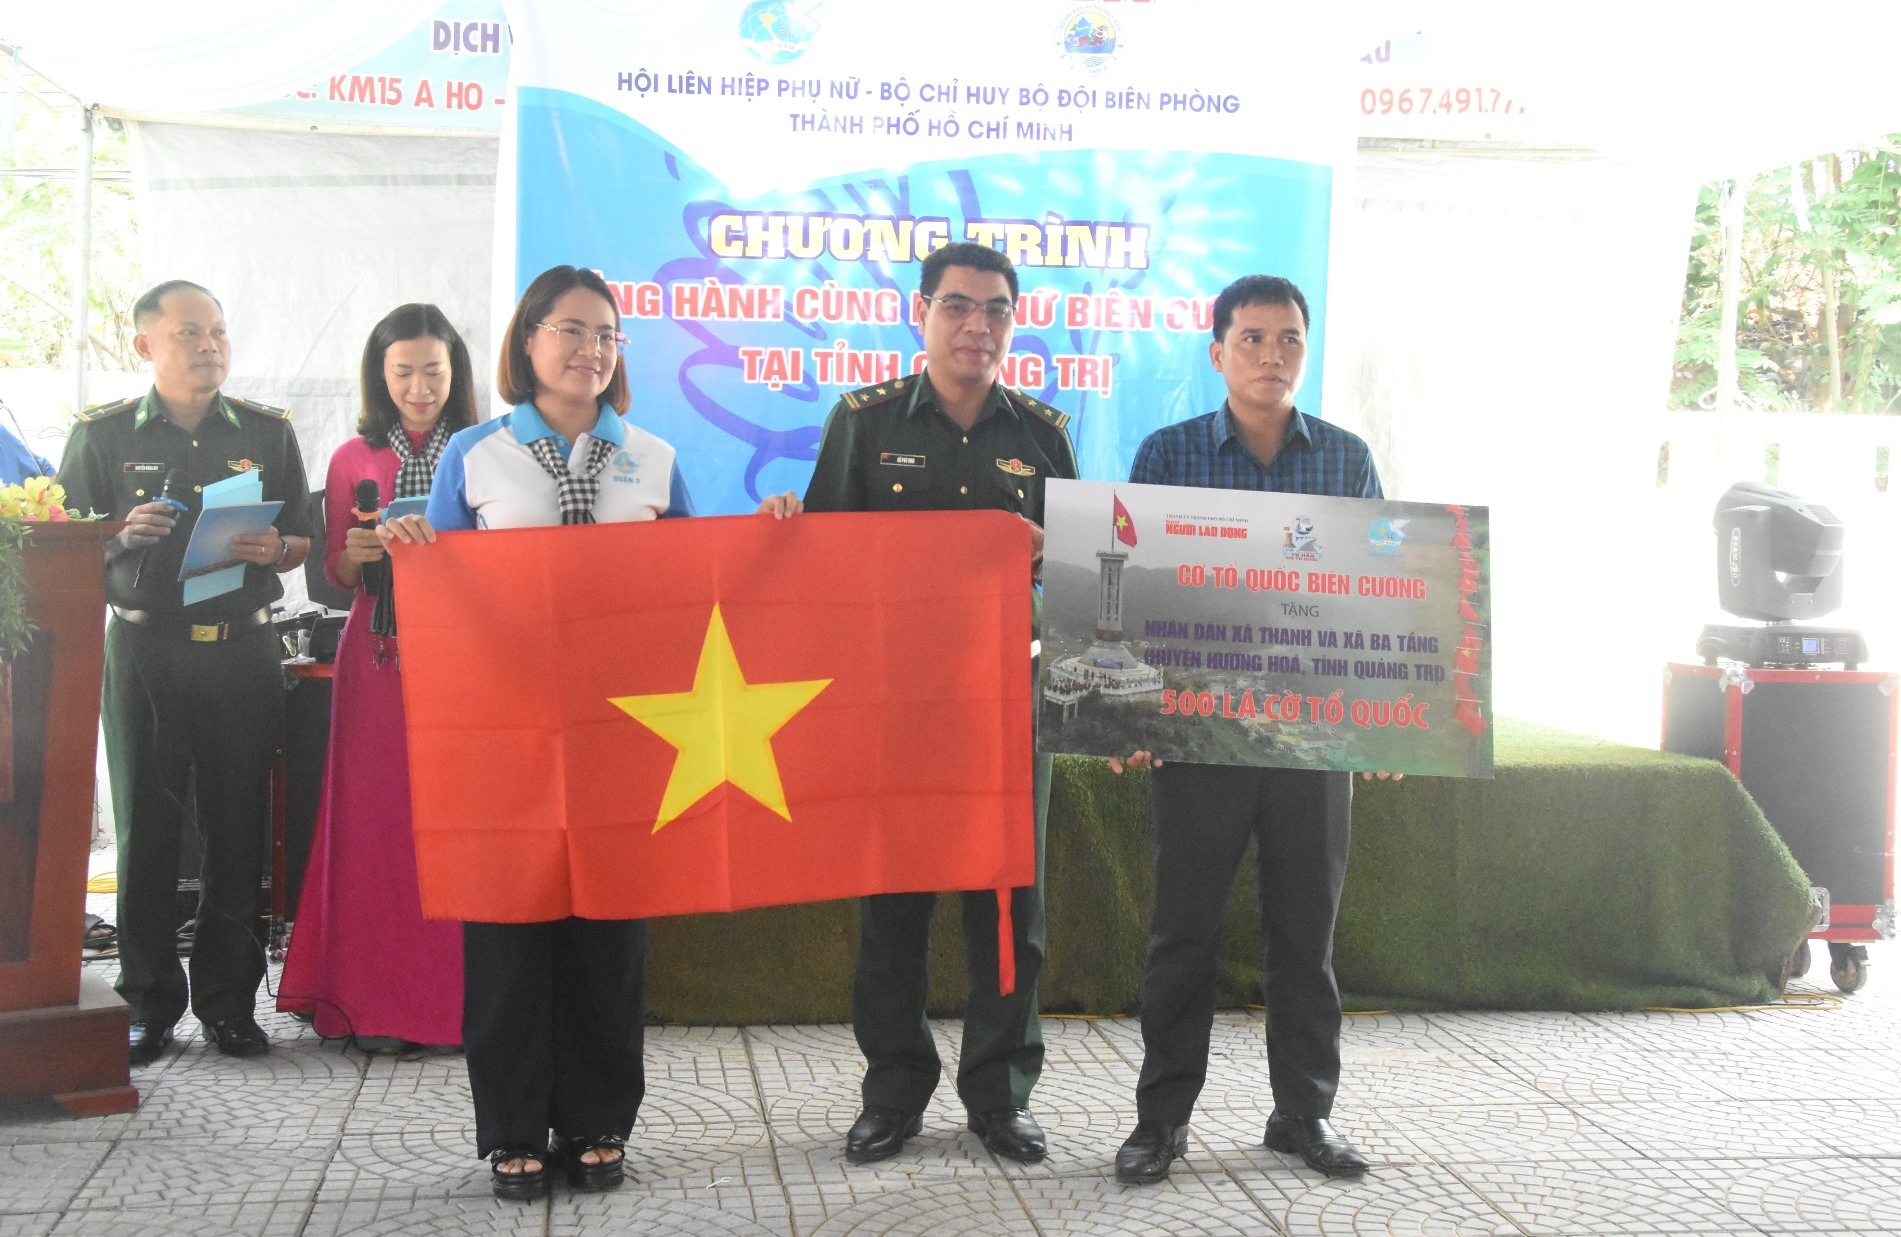 Trao tặng 500 lá cờ Tổ quốc cho Nhân dân xã Thanh, xã Ba Tầng - Ảnh: ĐV